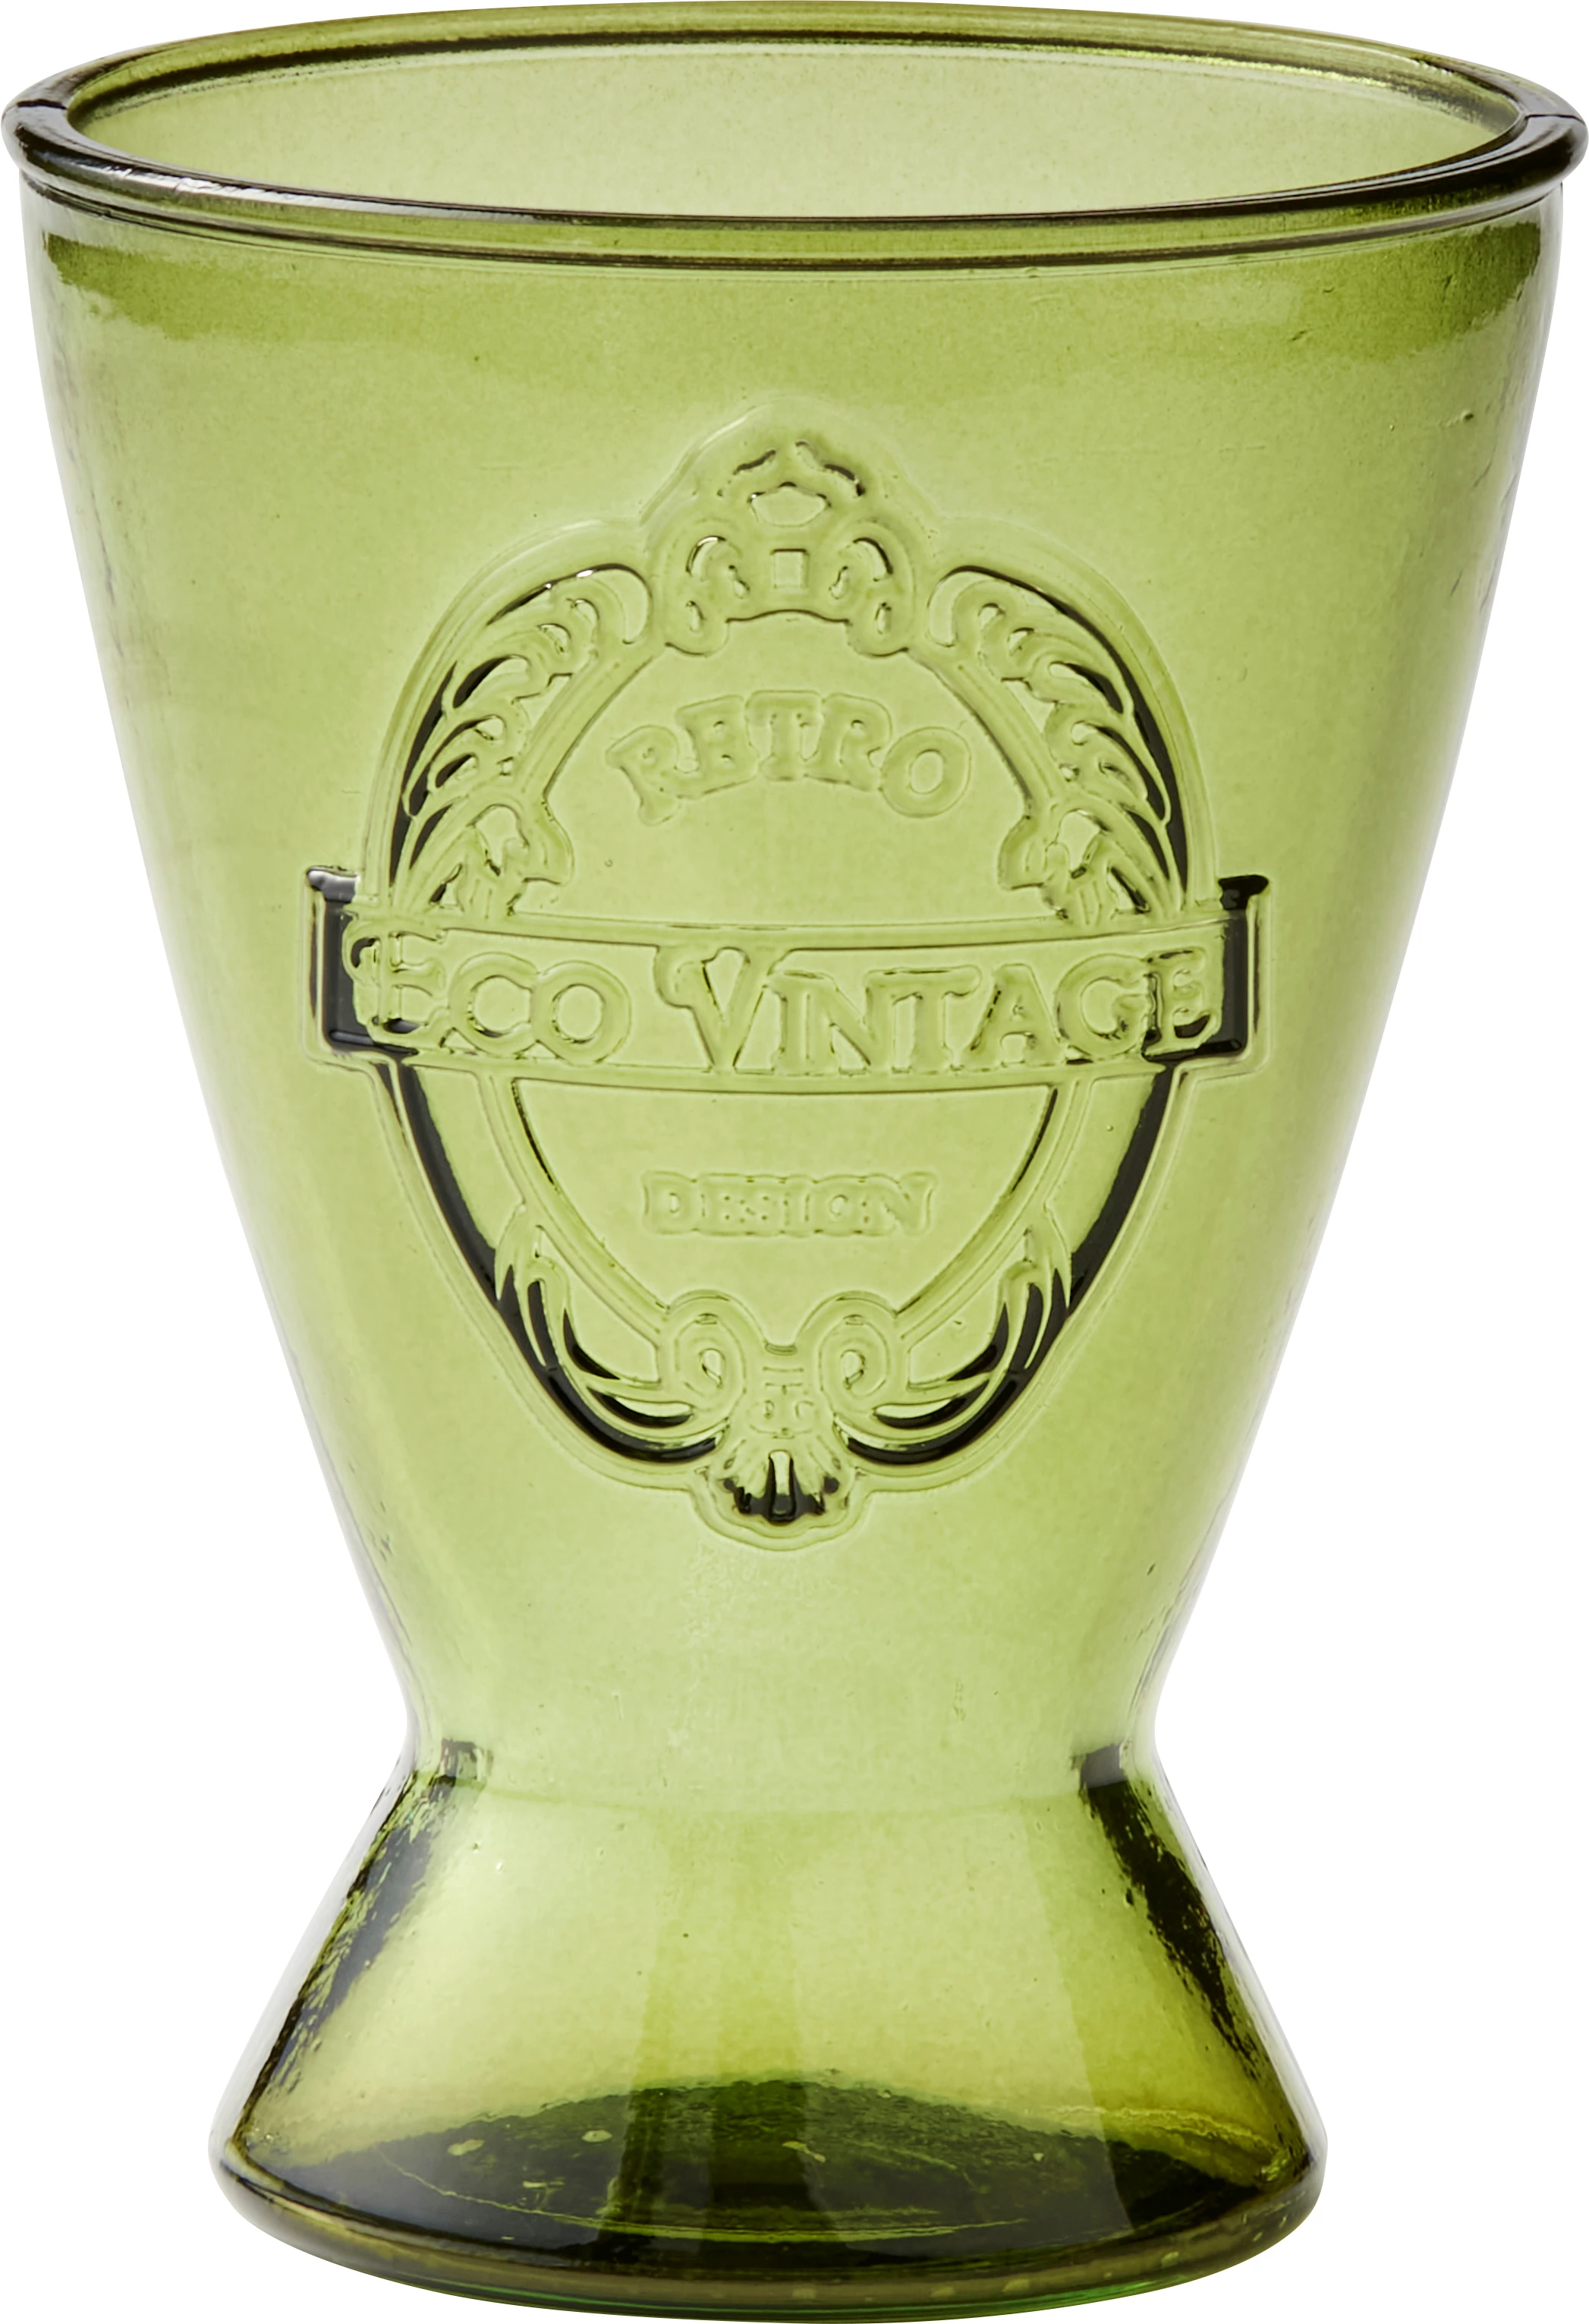 Eco Vintage drikkeglas, grøn, 40 cl, H14 cm